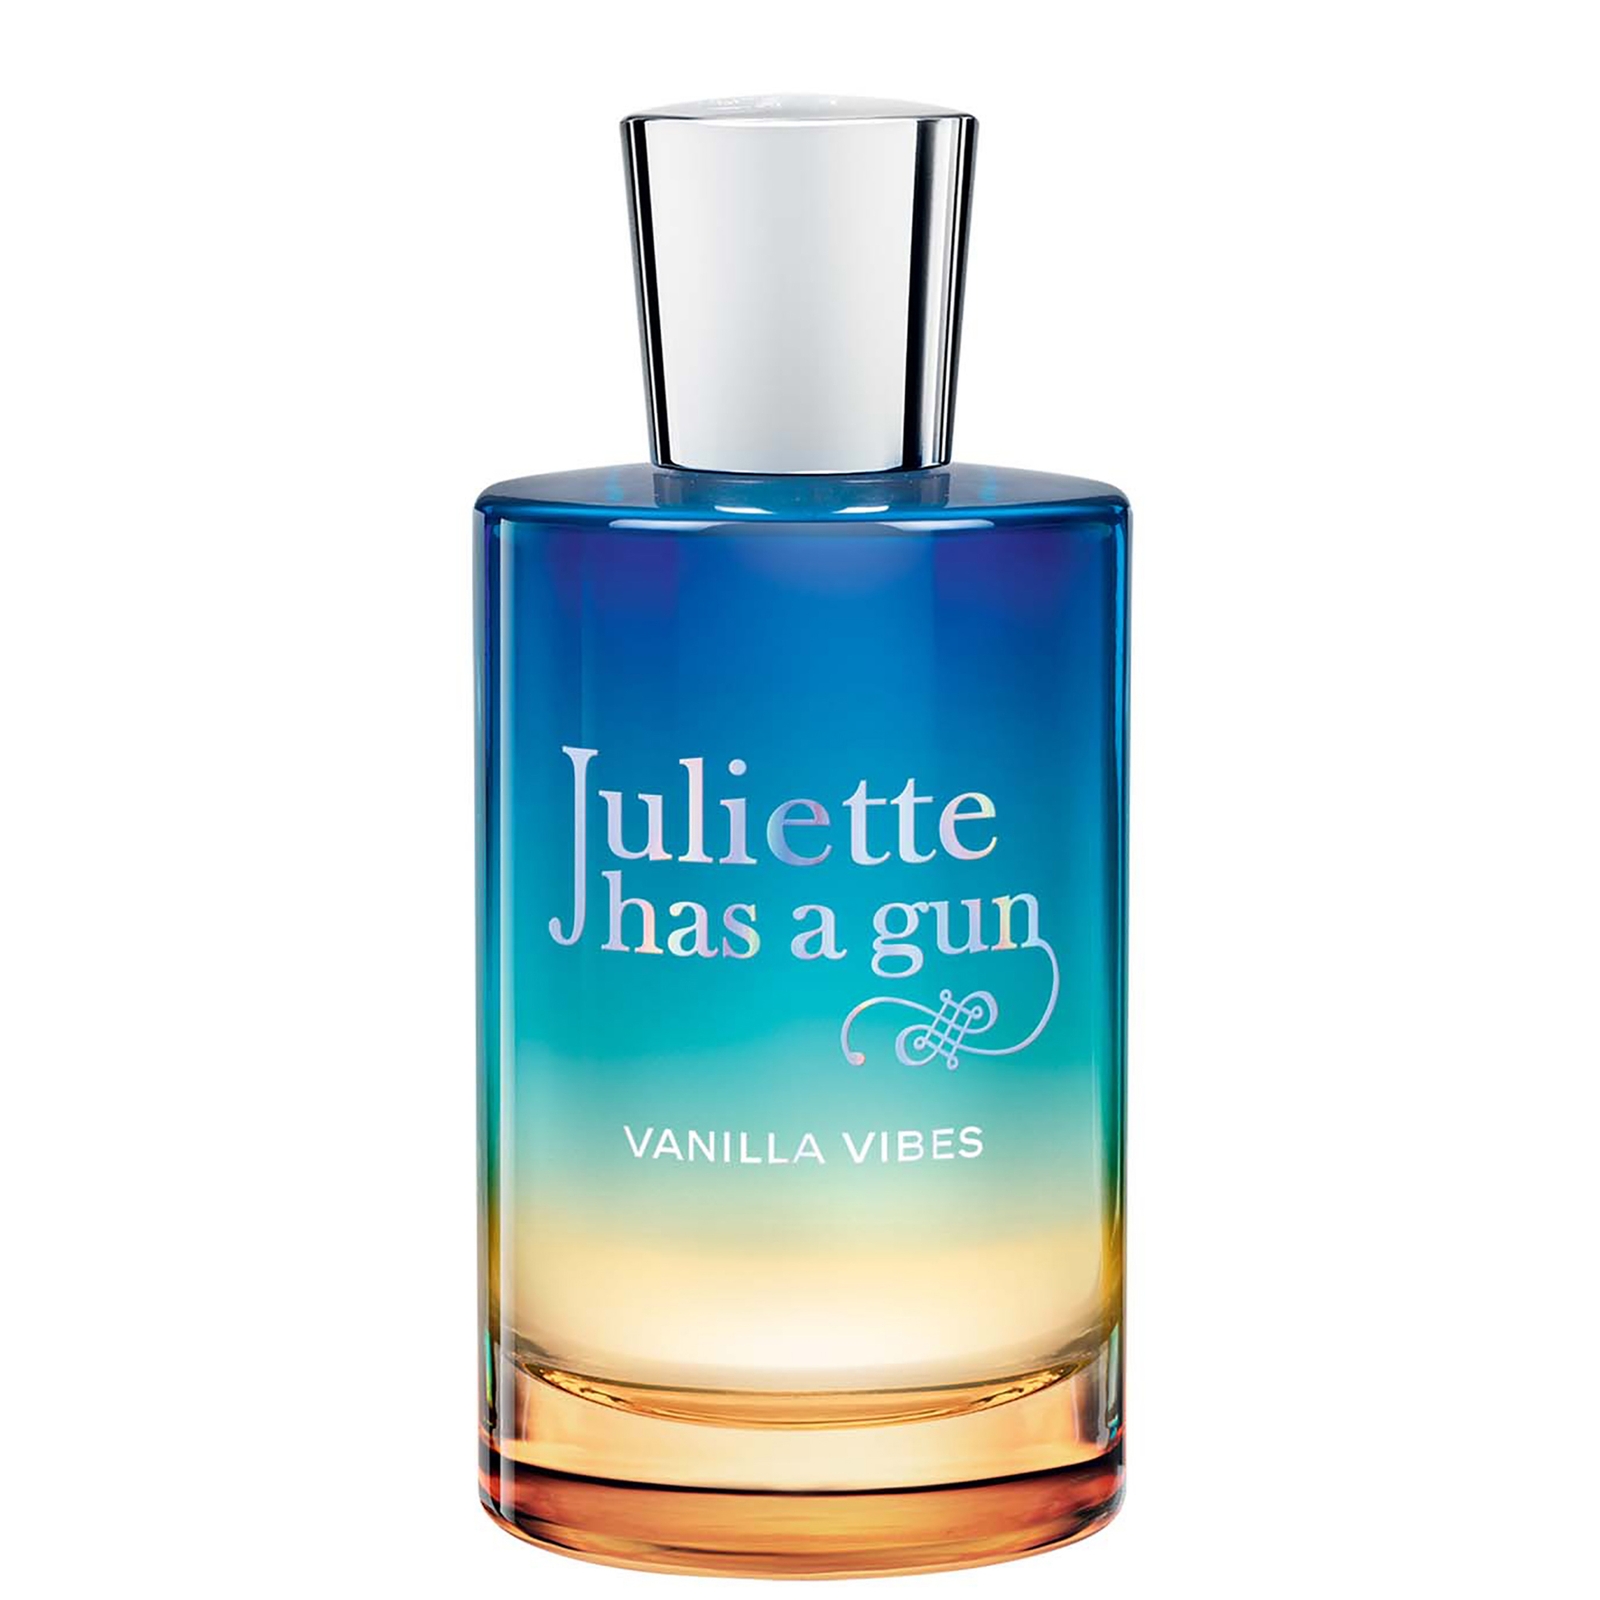 Photos - Women's Fragrance Juliette Has a Gun Vanilla Vibes Eau de Parfum 100ml JVIBES-100 